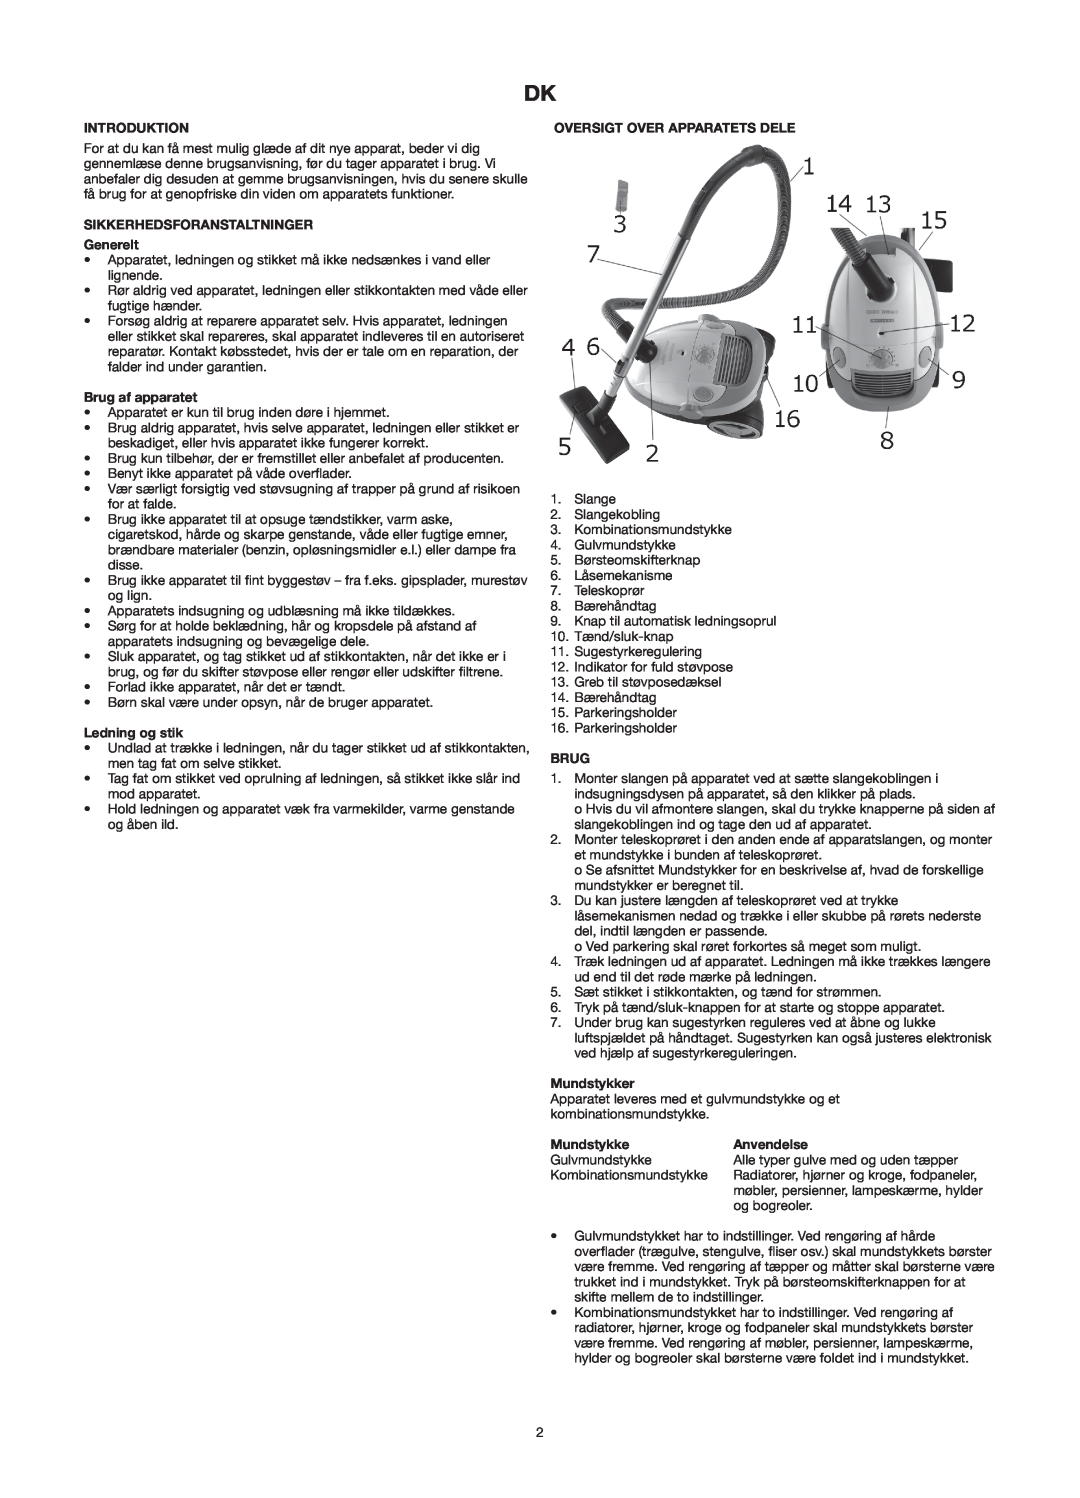 Melissa 640-141 manual Introduktion, SIKKERHEDSFORANSTALTNINGER Generelt, Brug af apparatet, Ledning og stik, Mundstykker 